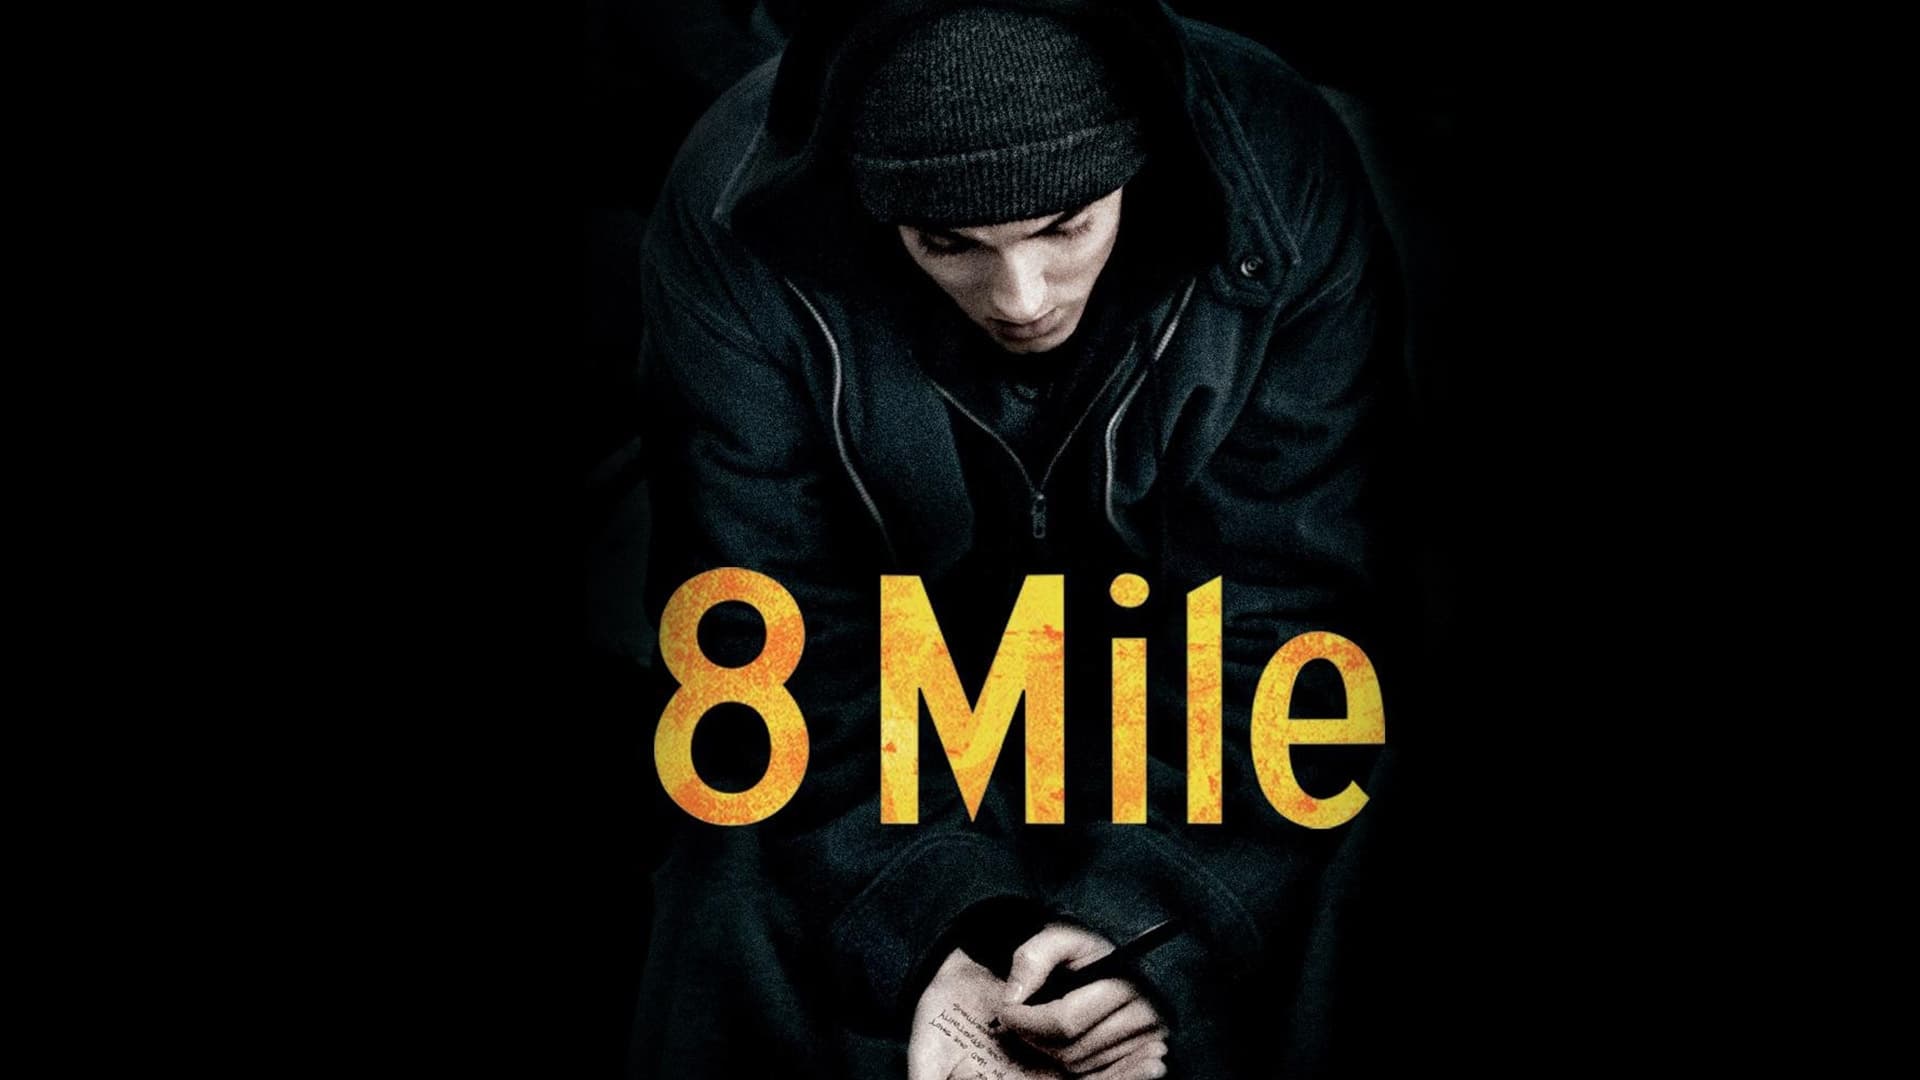 8 Mile (2002)